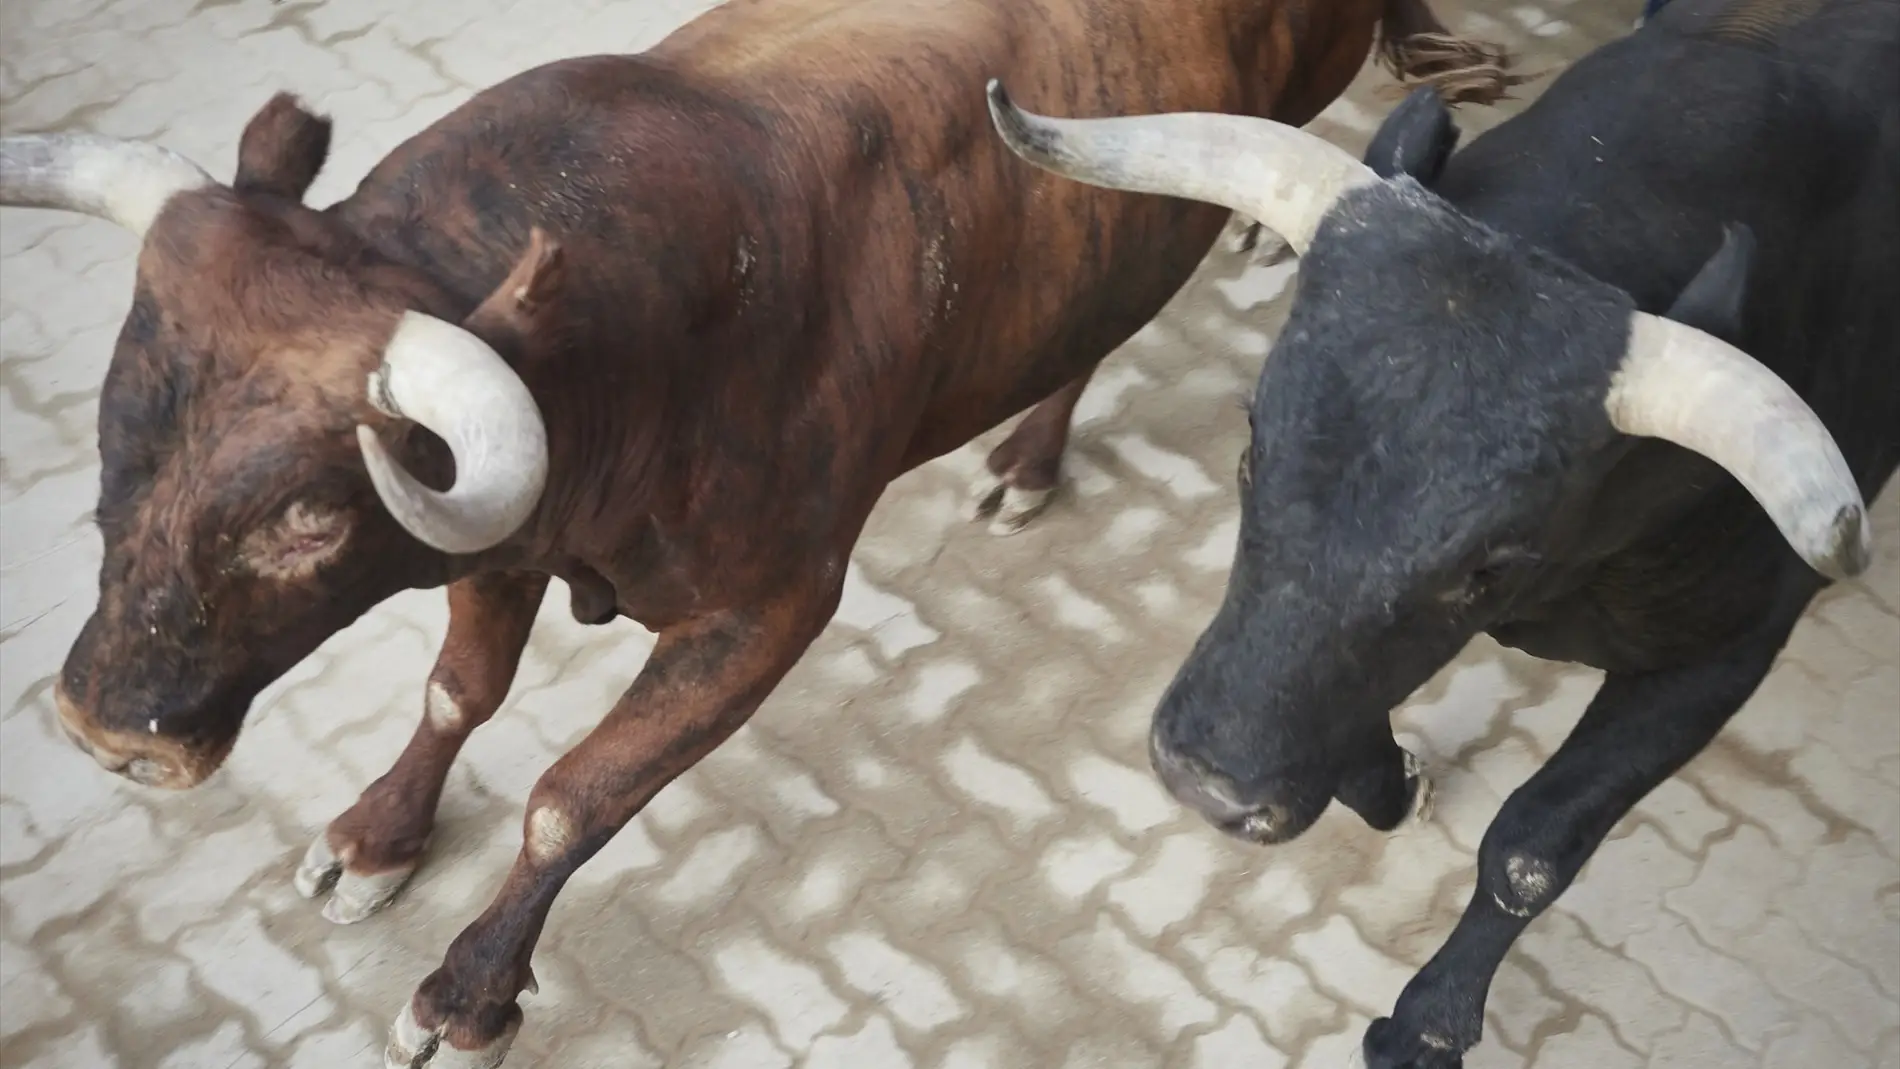 Muere un operario en la plaza de toros de Fuenlabrada corneado por un astado que entró en el callejón